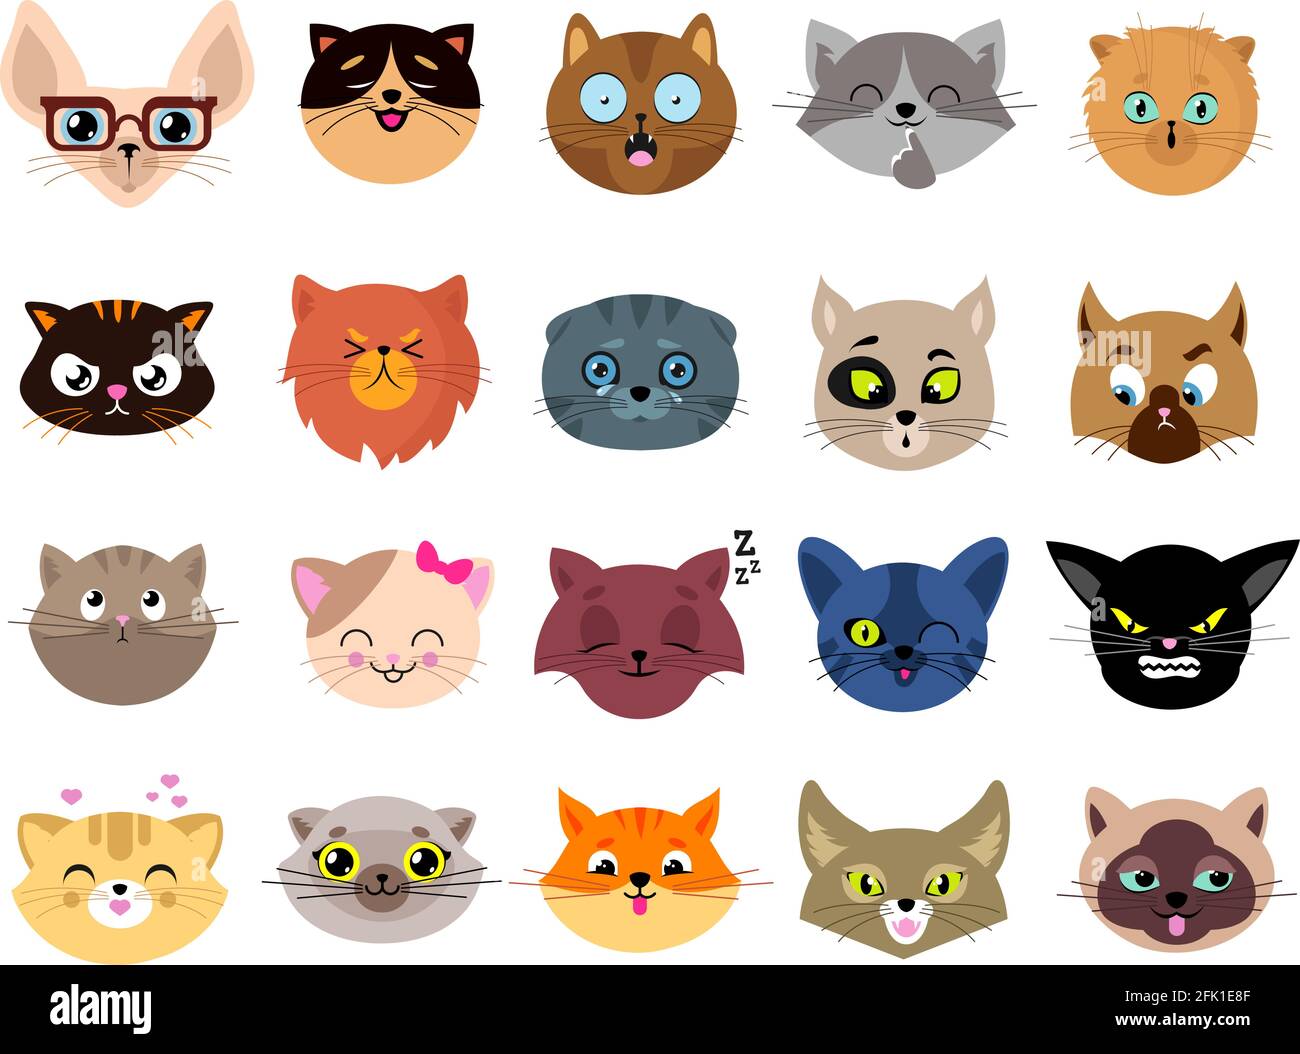 Katzen Avatare. Flache Katzengesichter. Isolierte Kätzchen mit Augen. Tiere lustige Emoji-Charaktere, Emoticon-Aufkleber. Doodle flauschig niedlichen Haustier Cliparts Stock Vektor